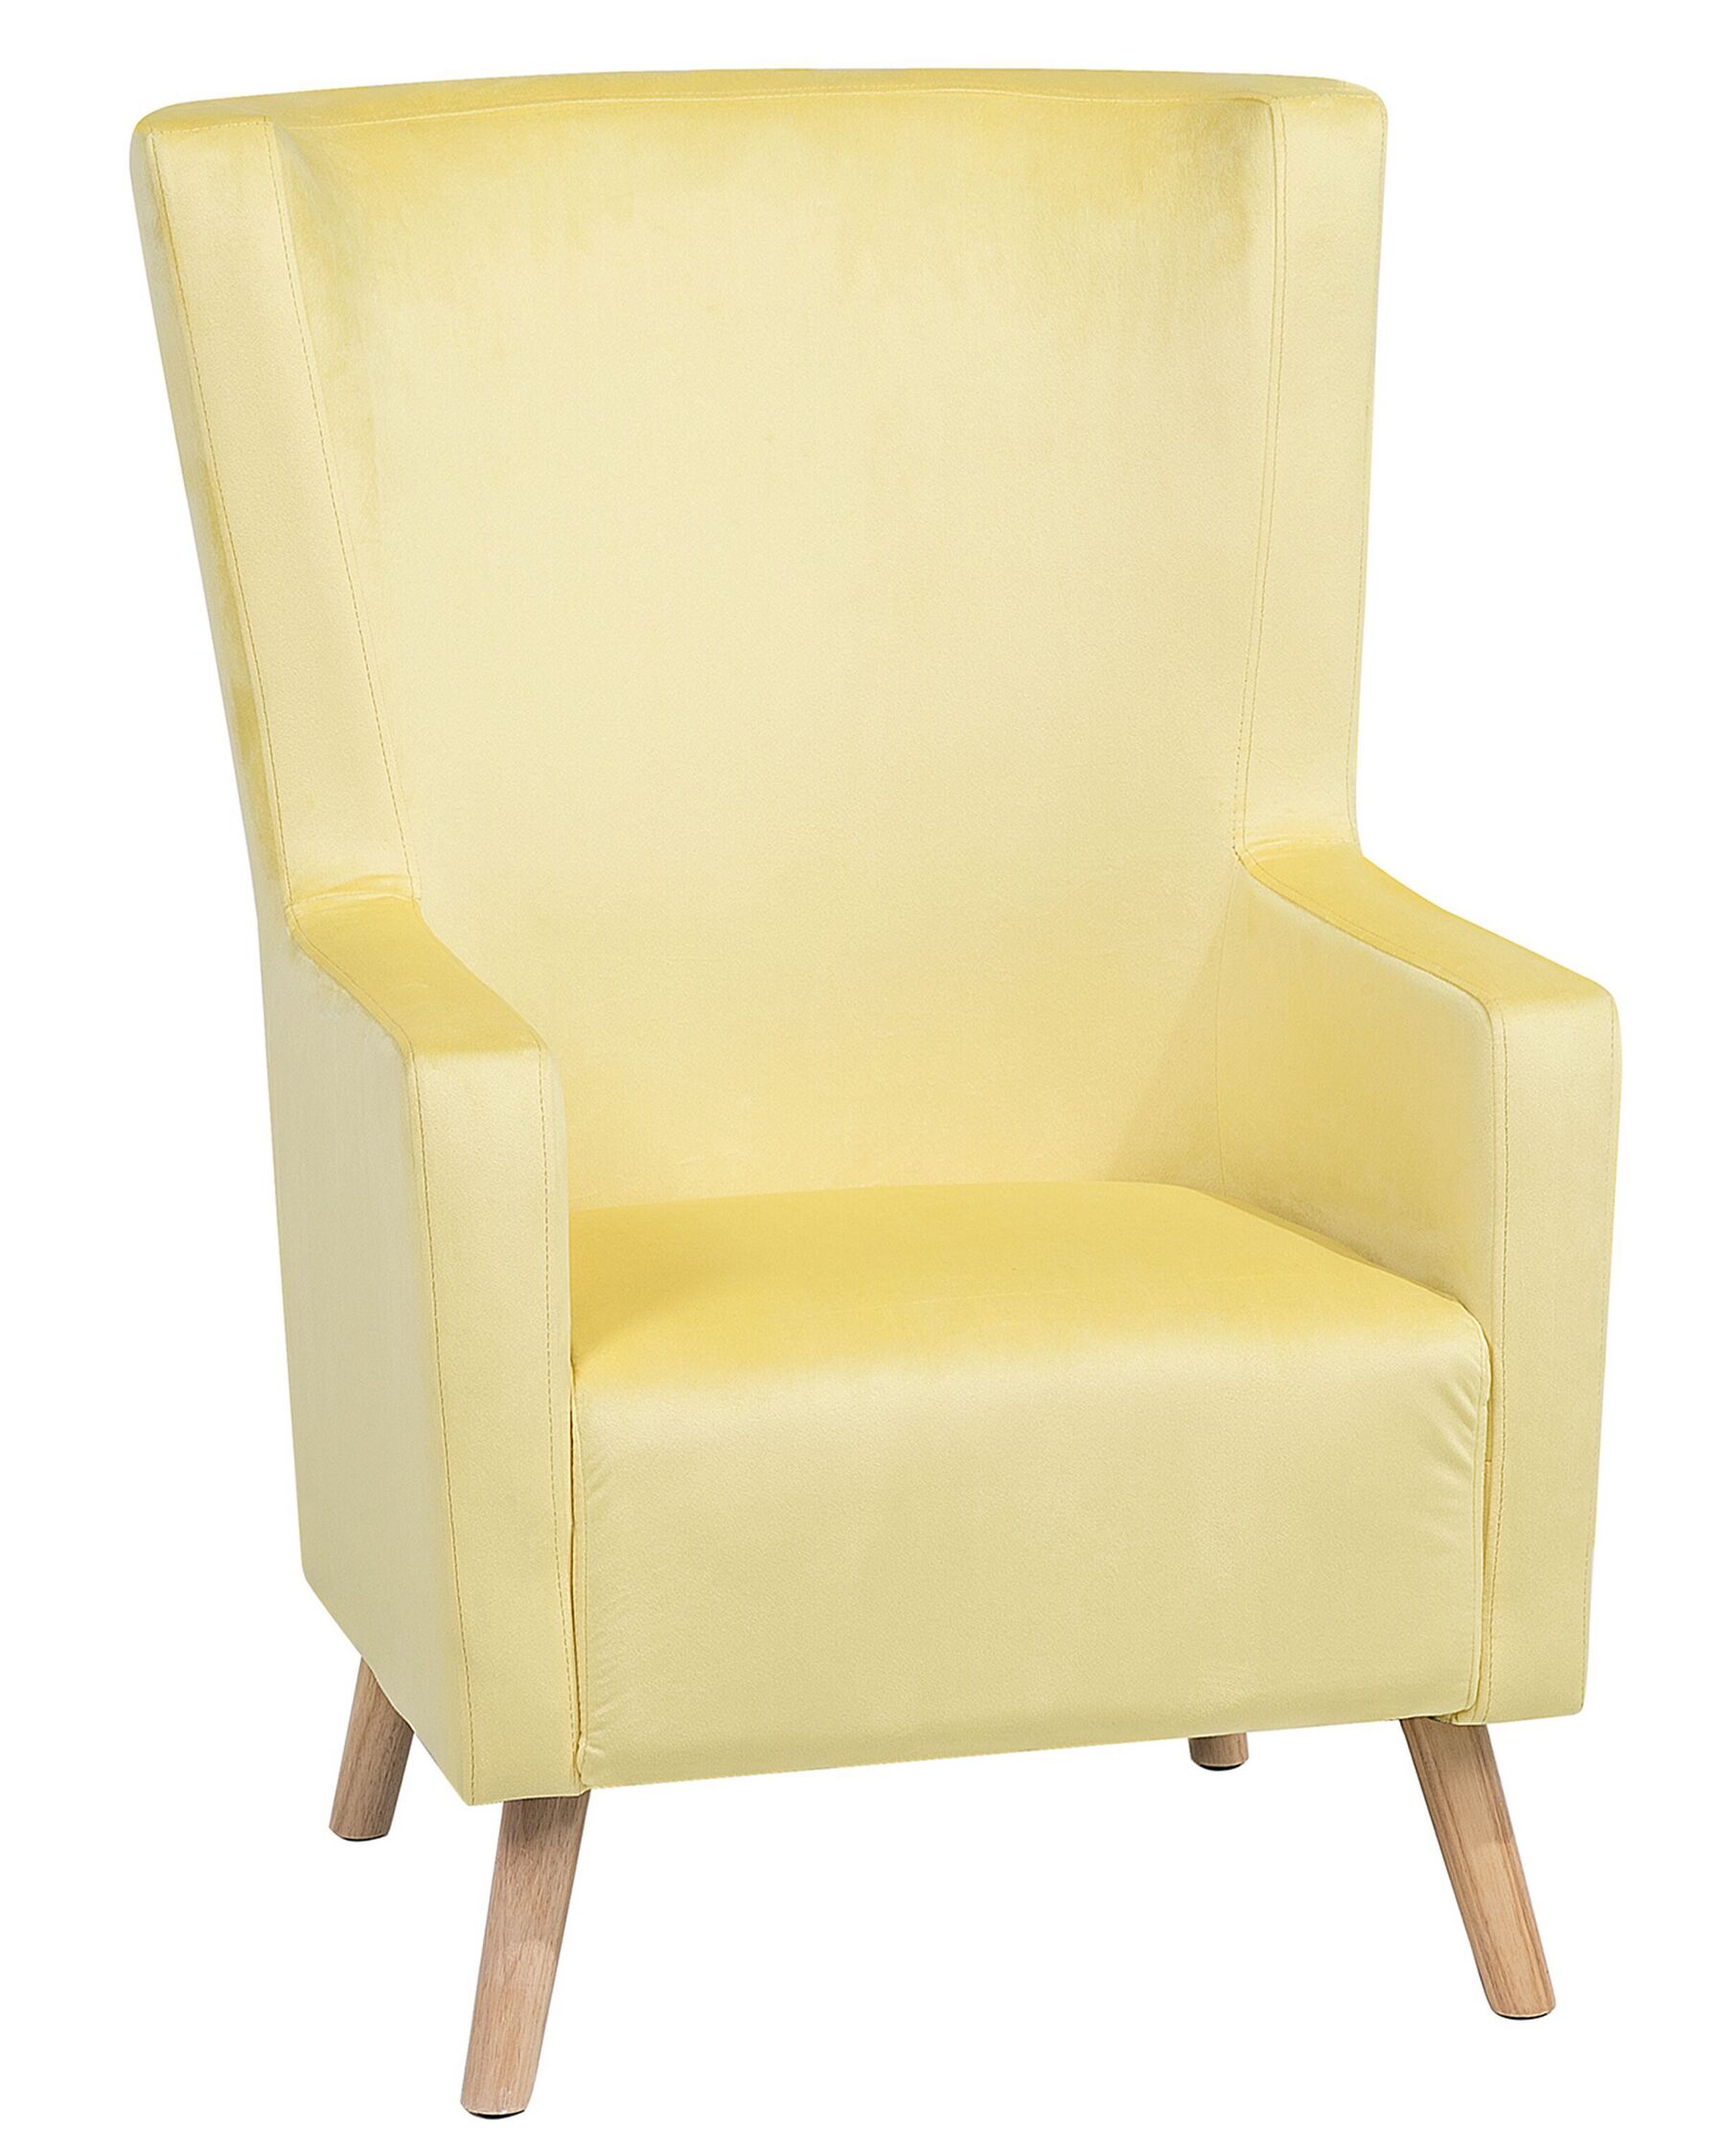 Trendy ear chair upholstered chair single chair yellow velvet Oneida-